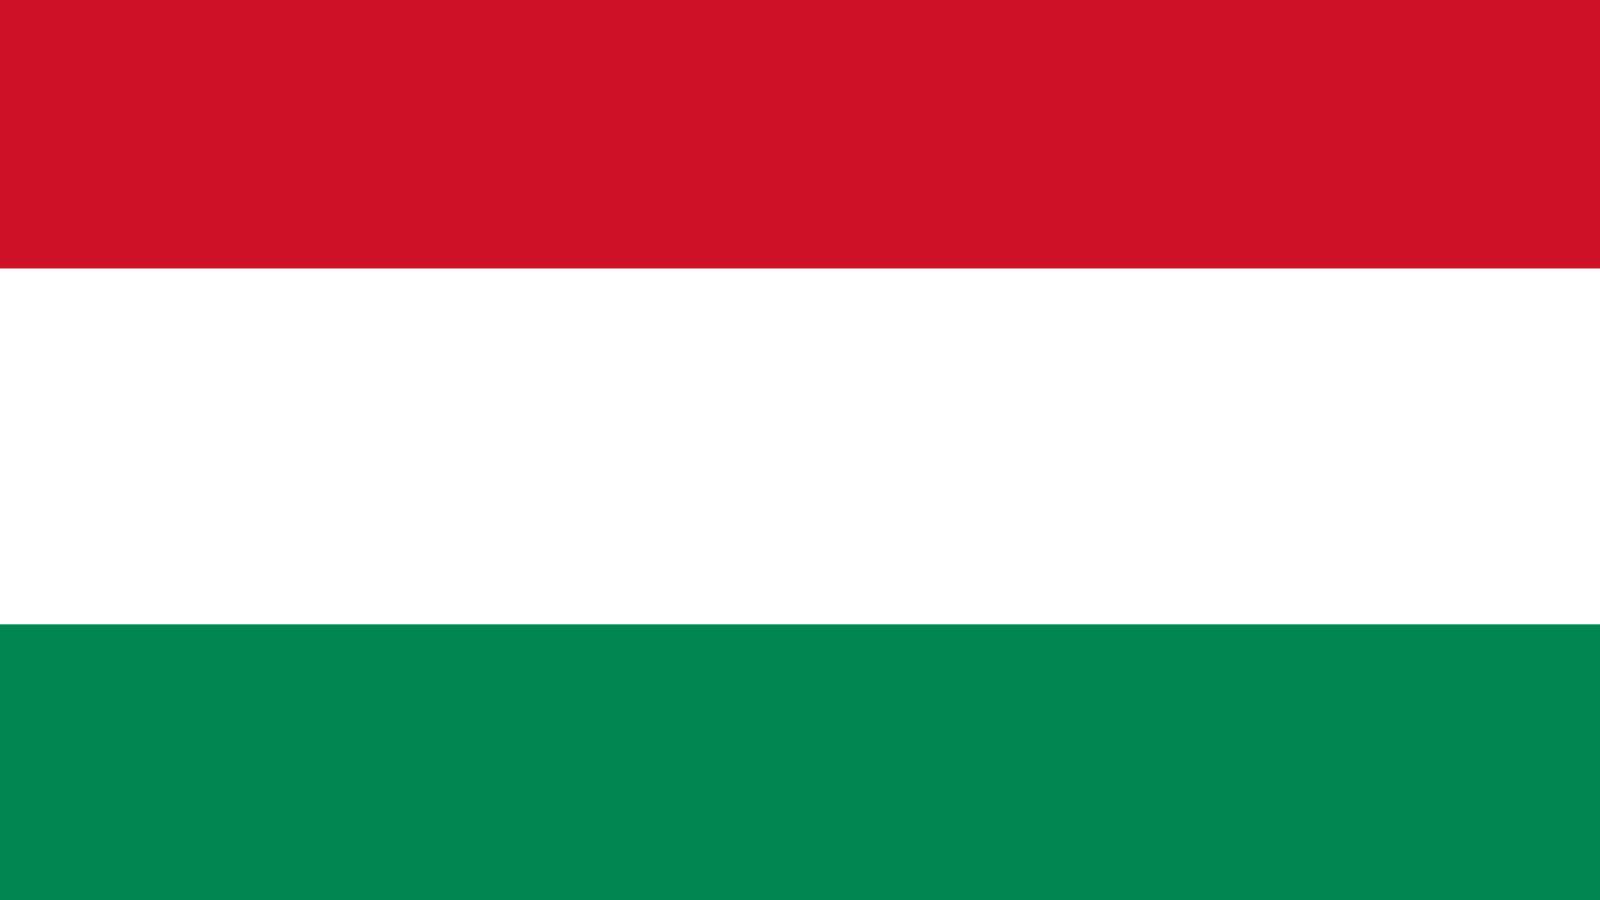 Ungern påstås ha blockerat EU:s senaste militära hjälppaket för Ukraina